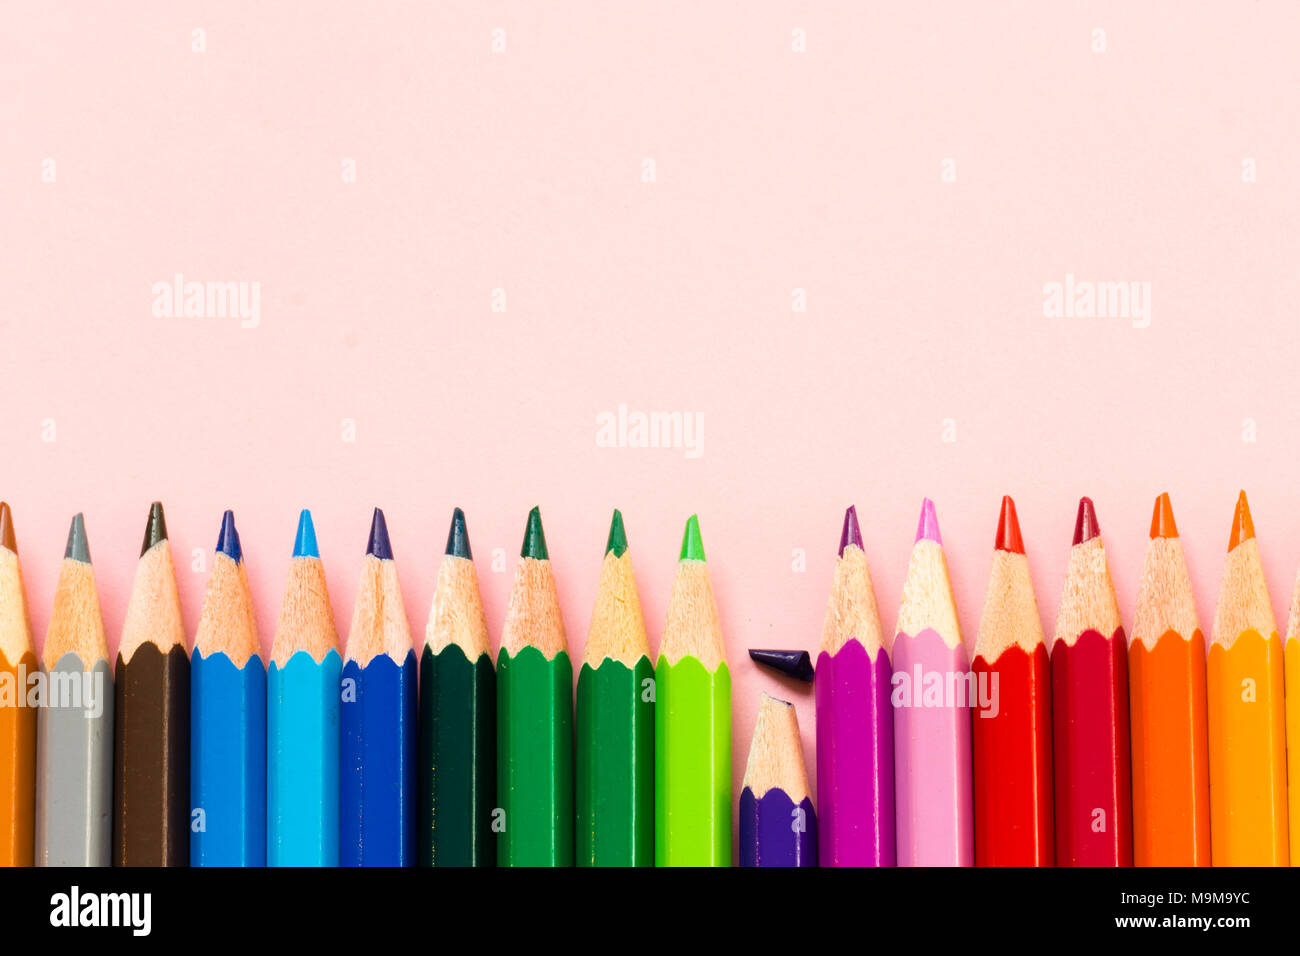 Pastelli colorati immagini e fotografie stock ad alta risoluzione - Alamy